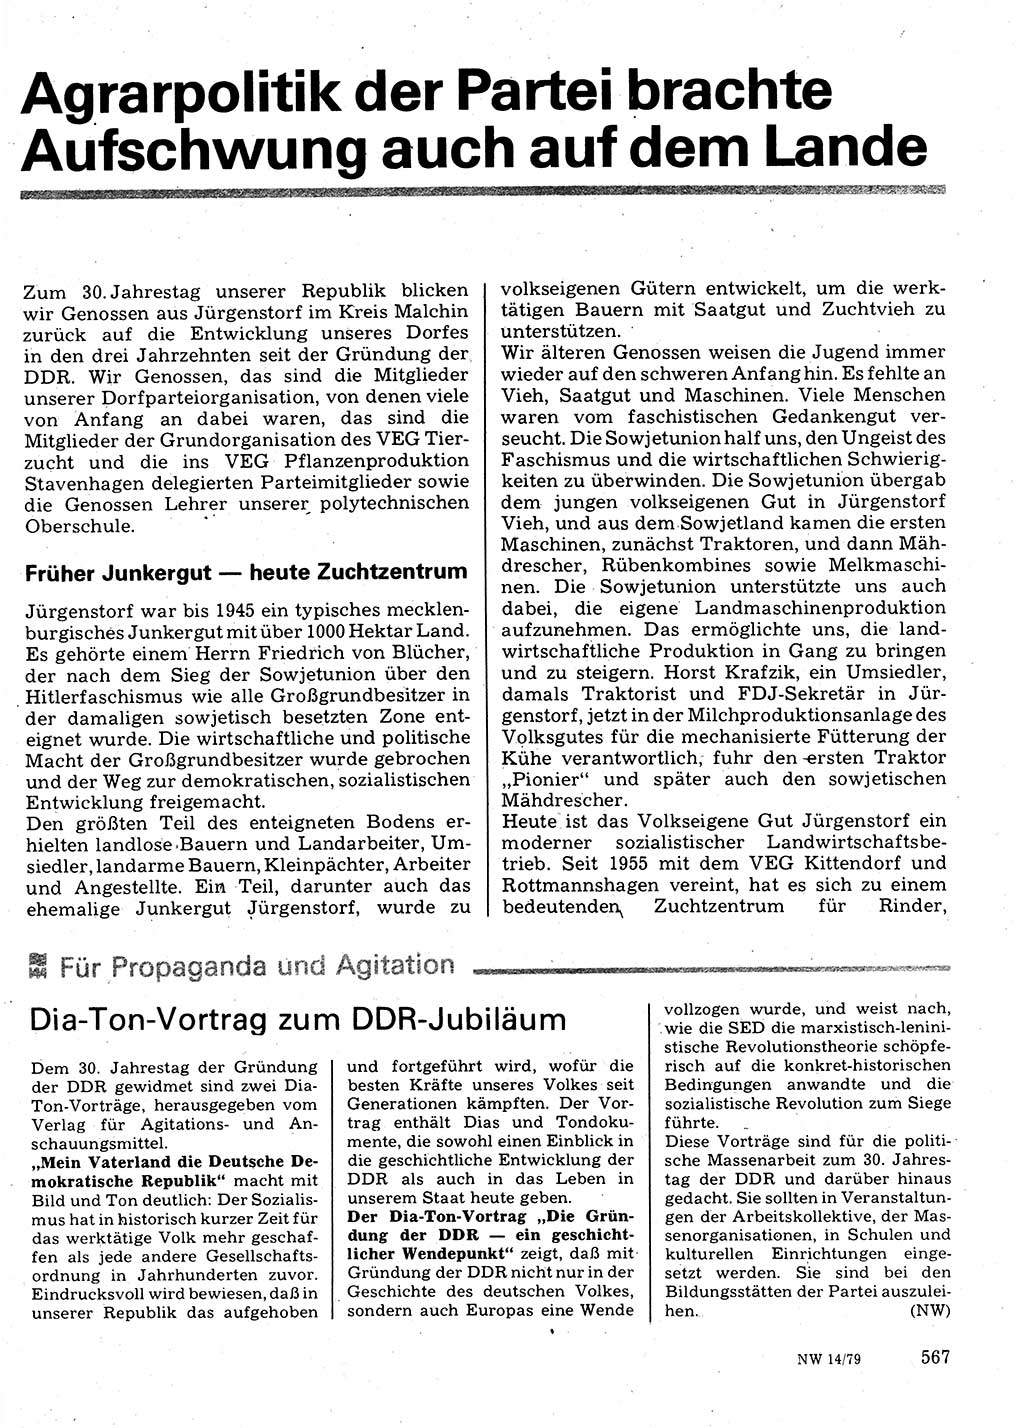 Neuer Weg (NW), Organ des Zentralkomitees (ZK) der SED (Sozialistische Einheitspartei Deutschlands) für Fragen des Parteilebens, 34. Jahrgang [Deutsche Demokratische Republik (DDR)] 1979, Seite 567 (NW ZK SED DDR 1979, S. 567)